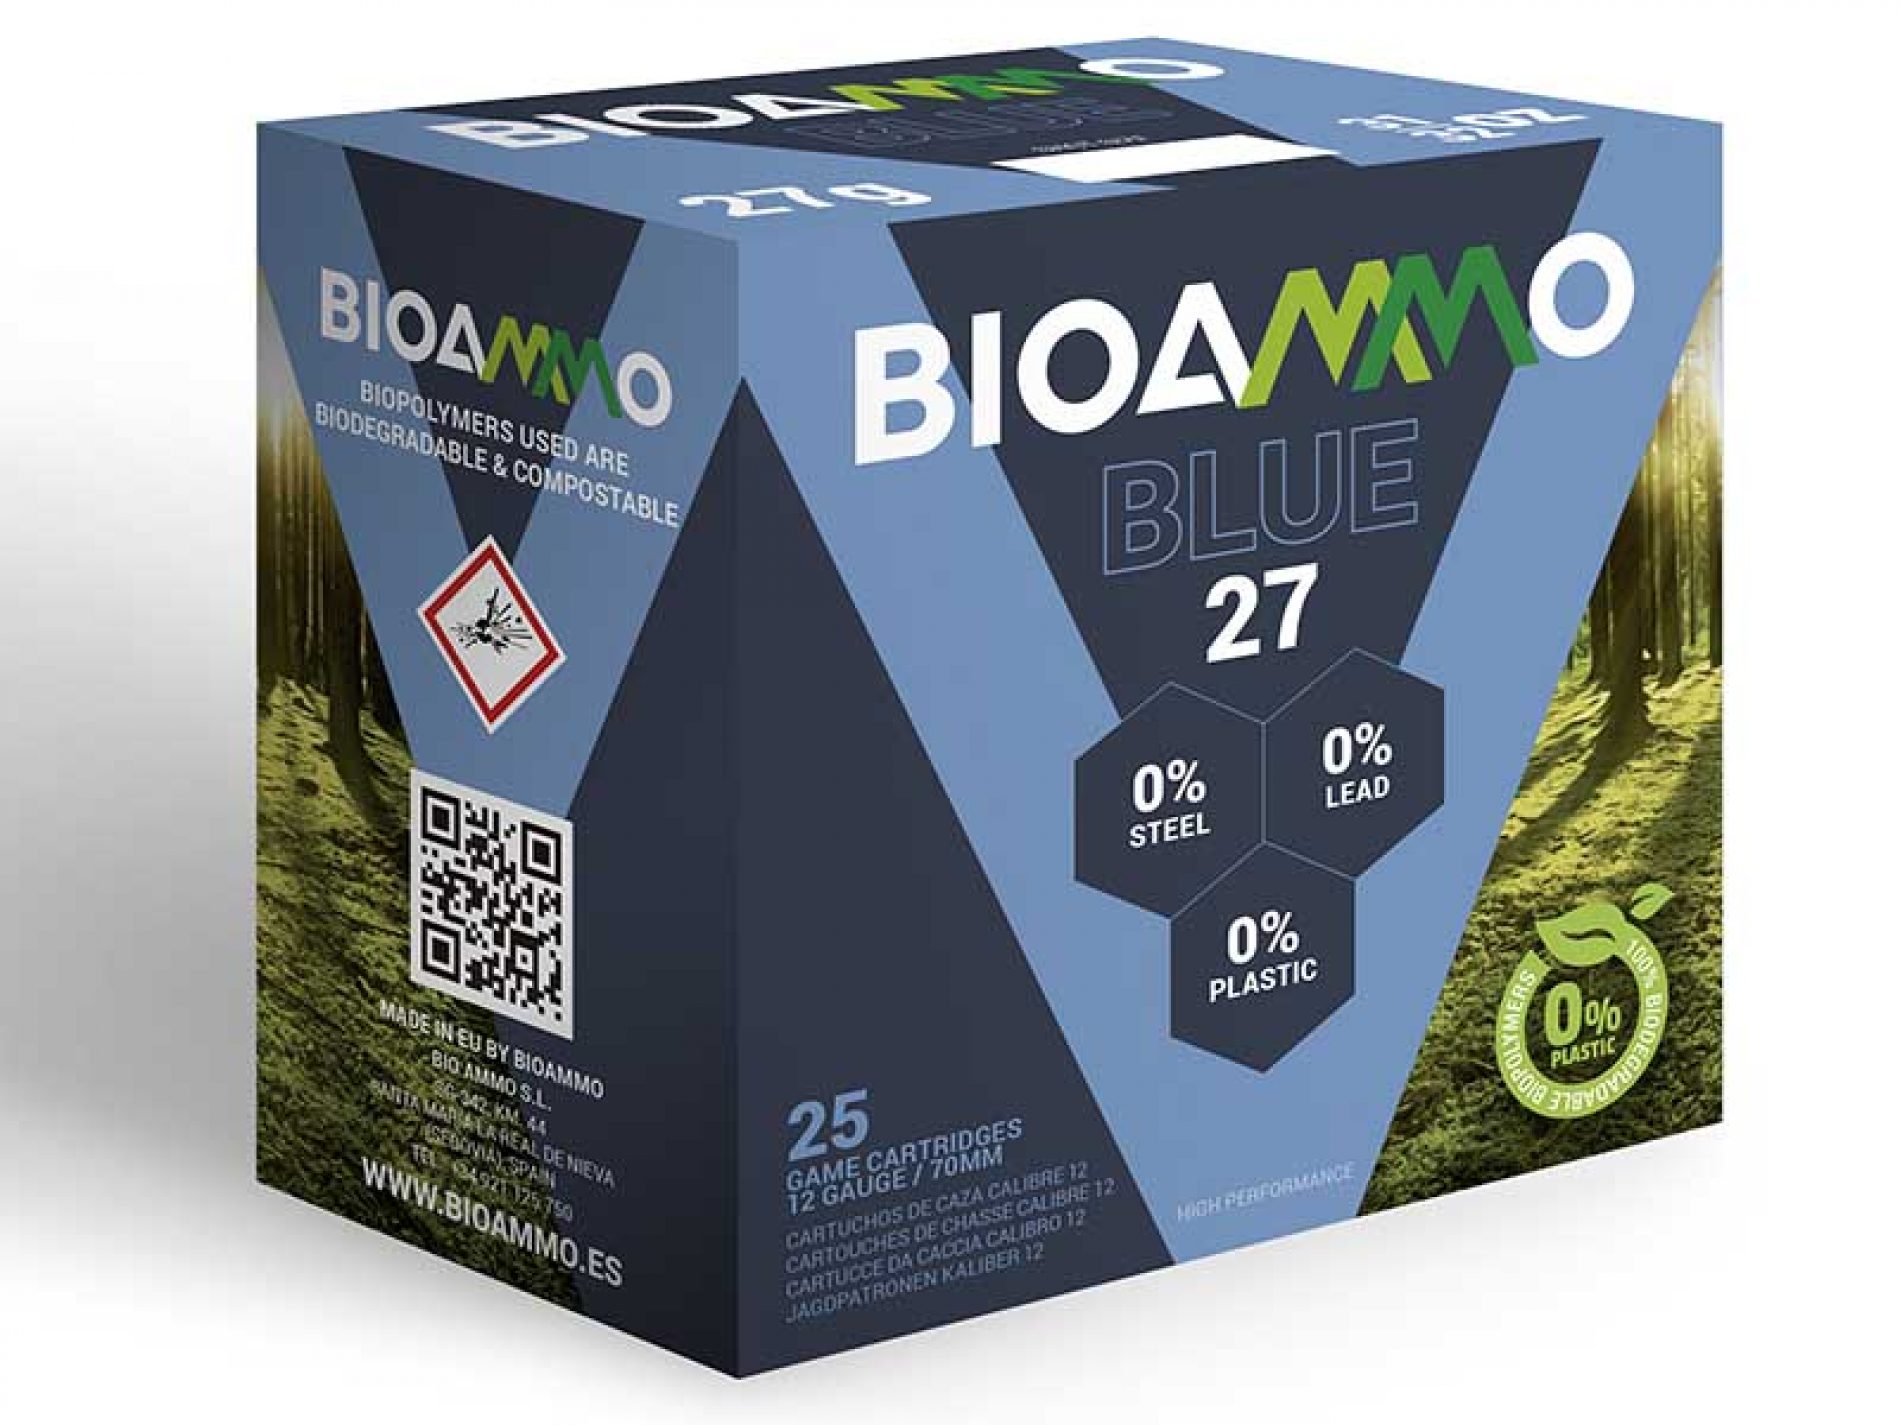 Última incorporación de Bioammo a su catálogo con perdigón libre de plomo